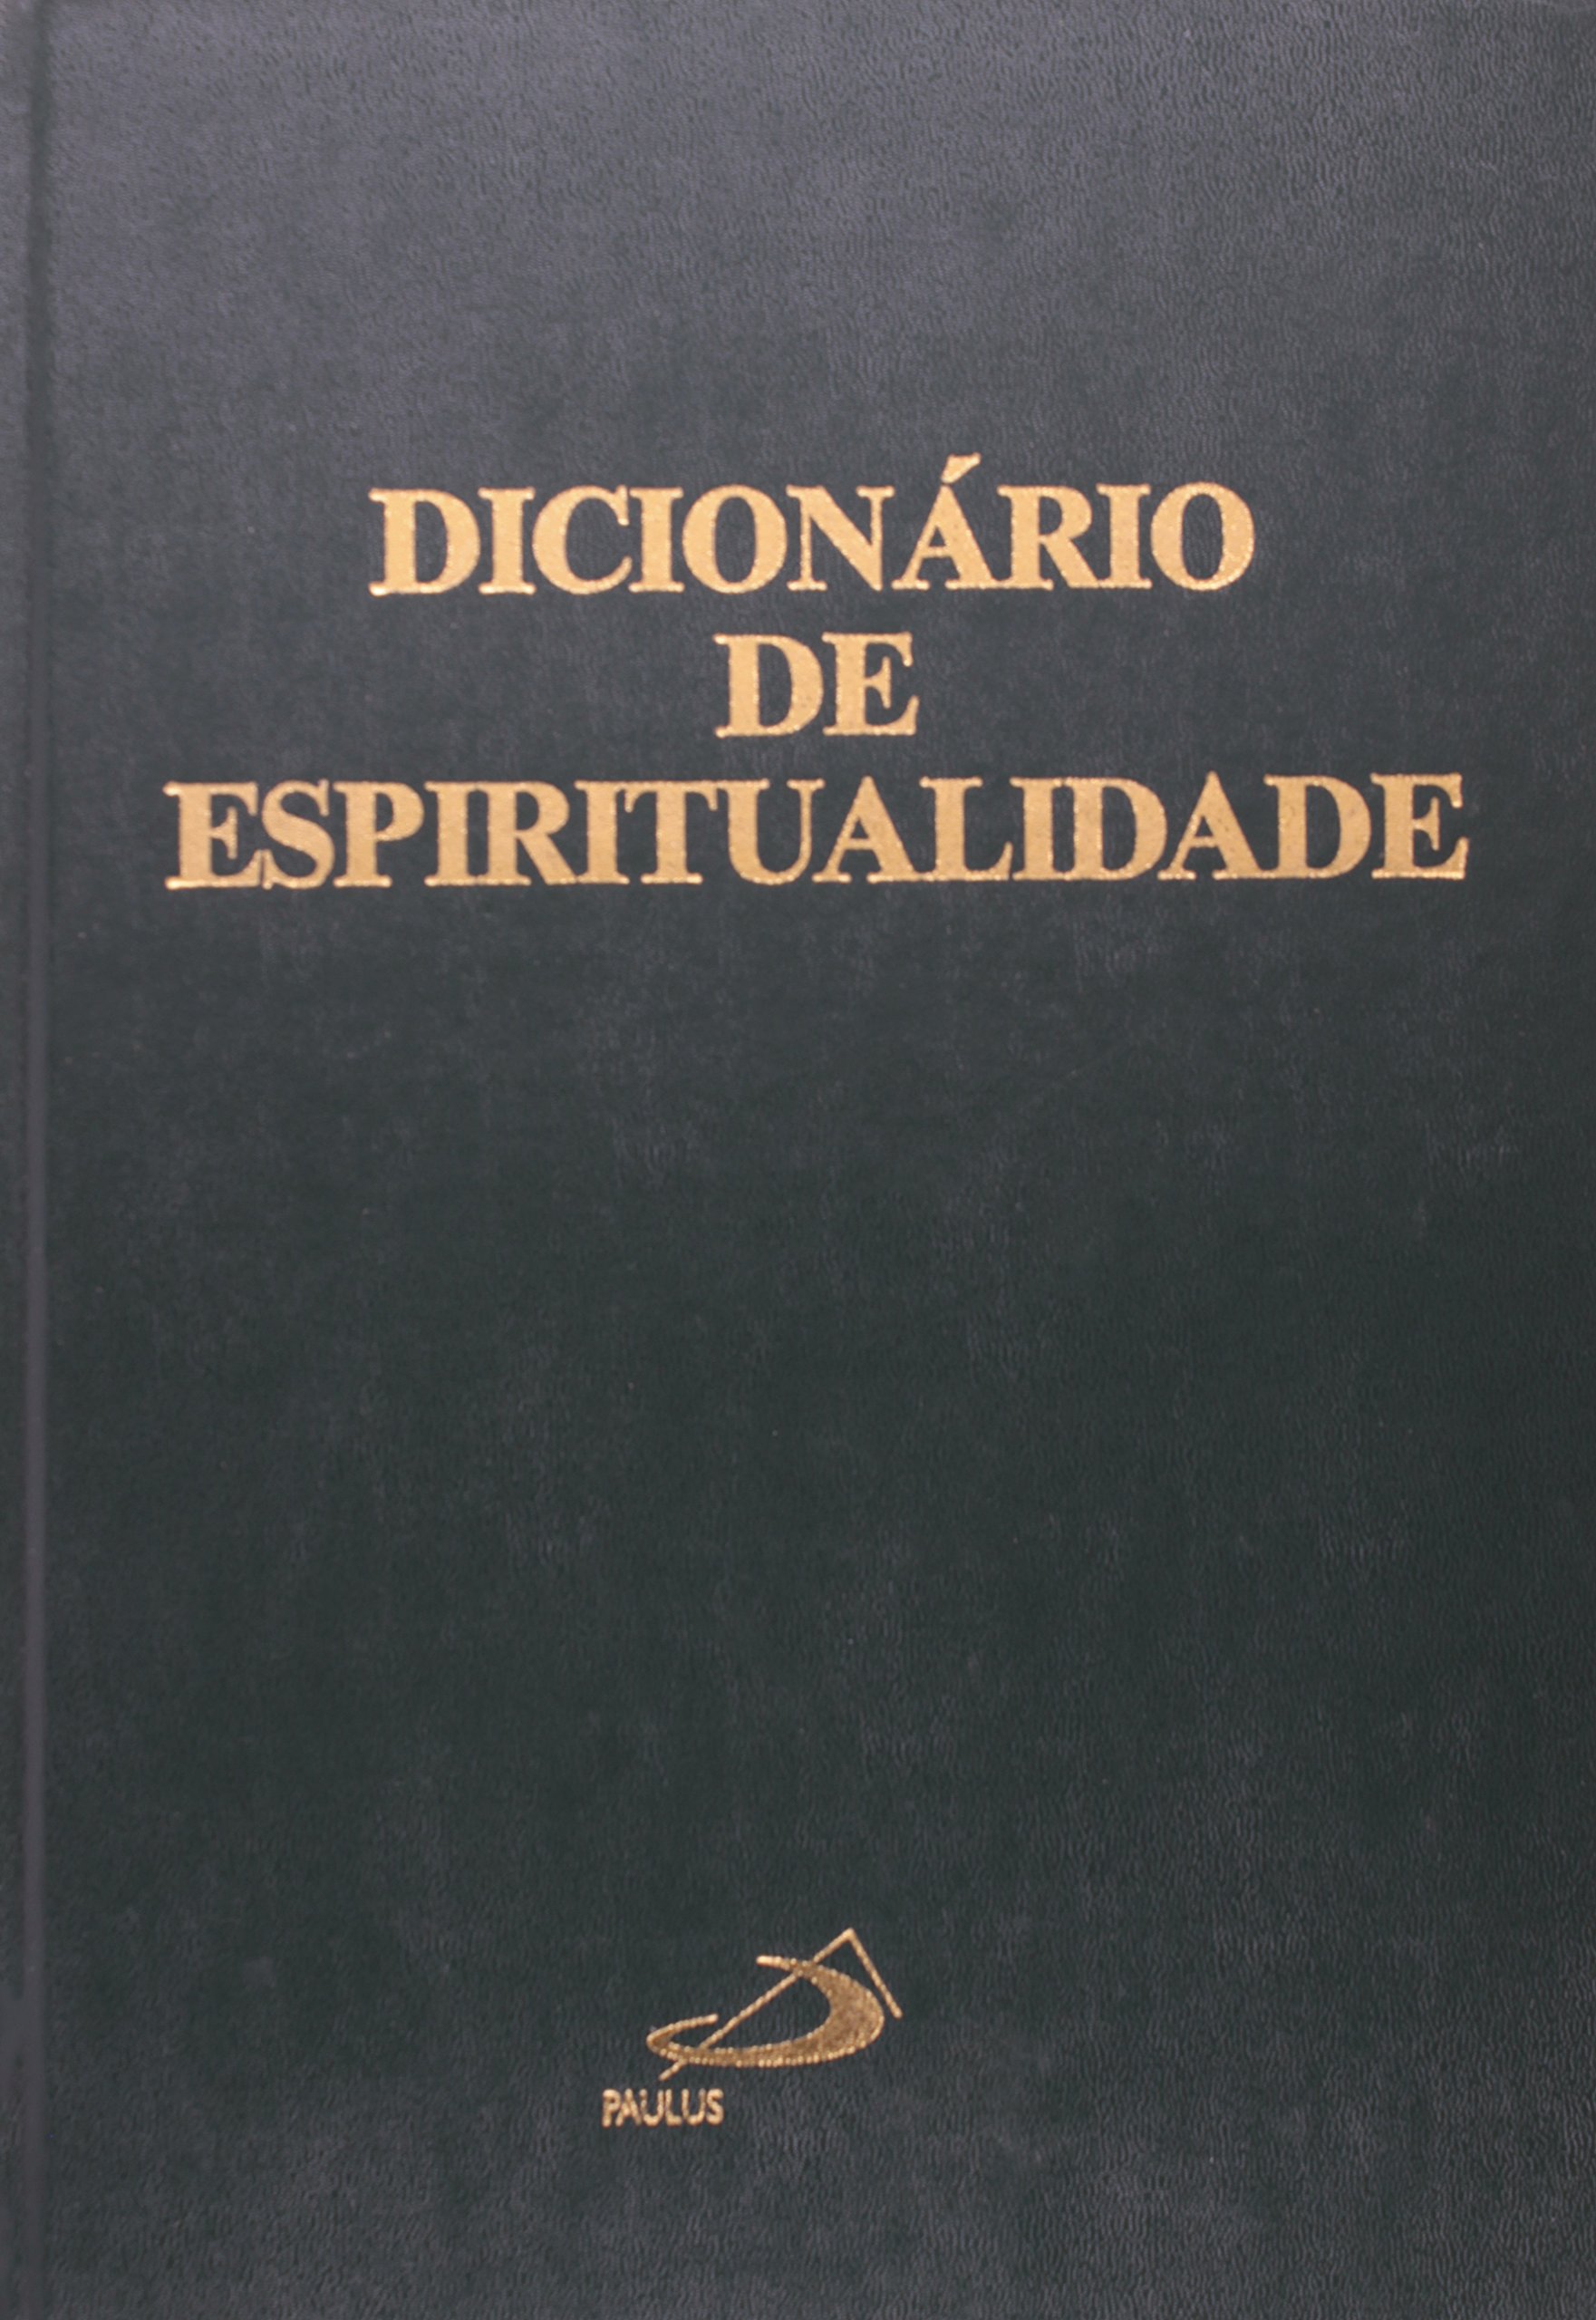 9788534943765 - DICIONARIO DE ESPIRITUALIDADE 1930G EDITORA PAULUS